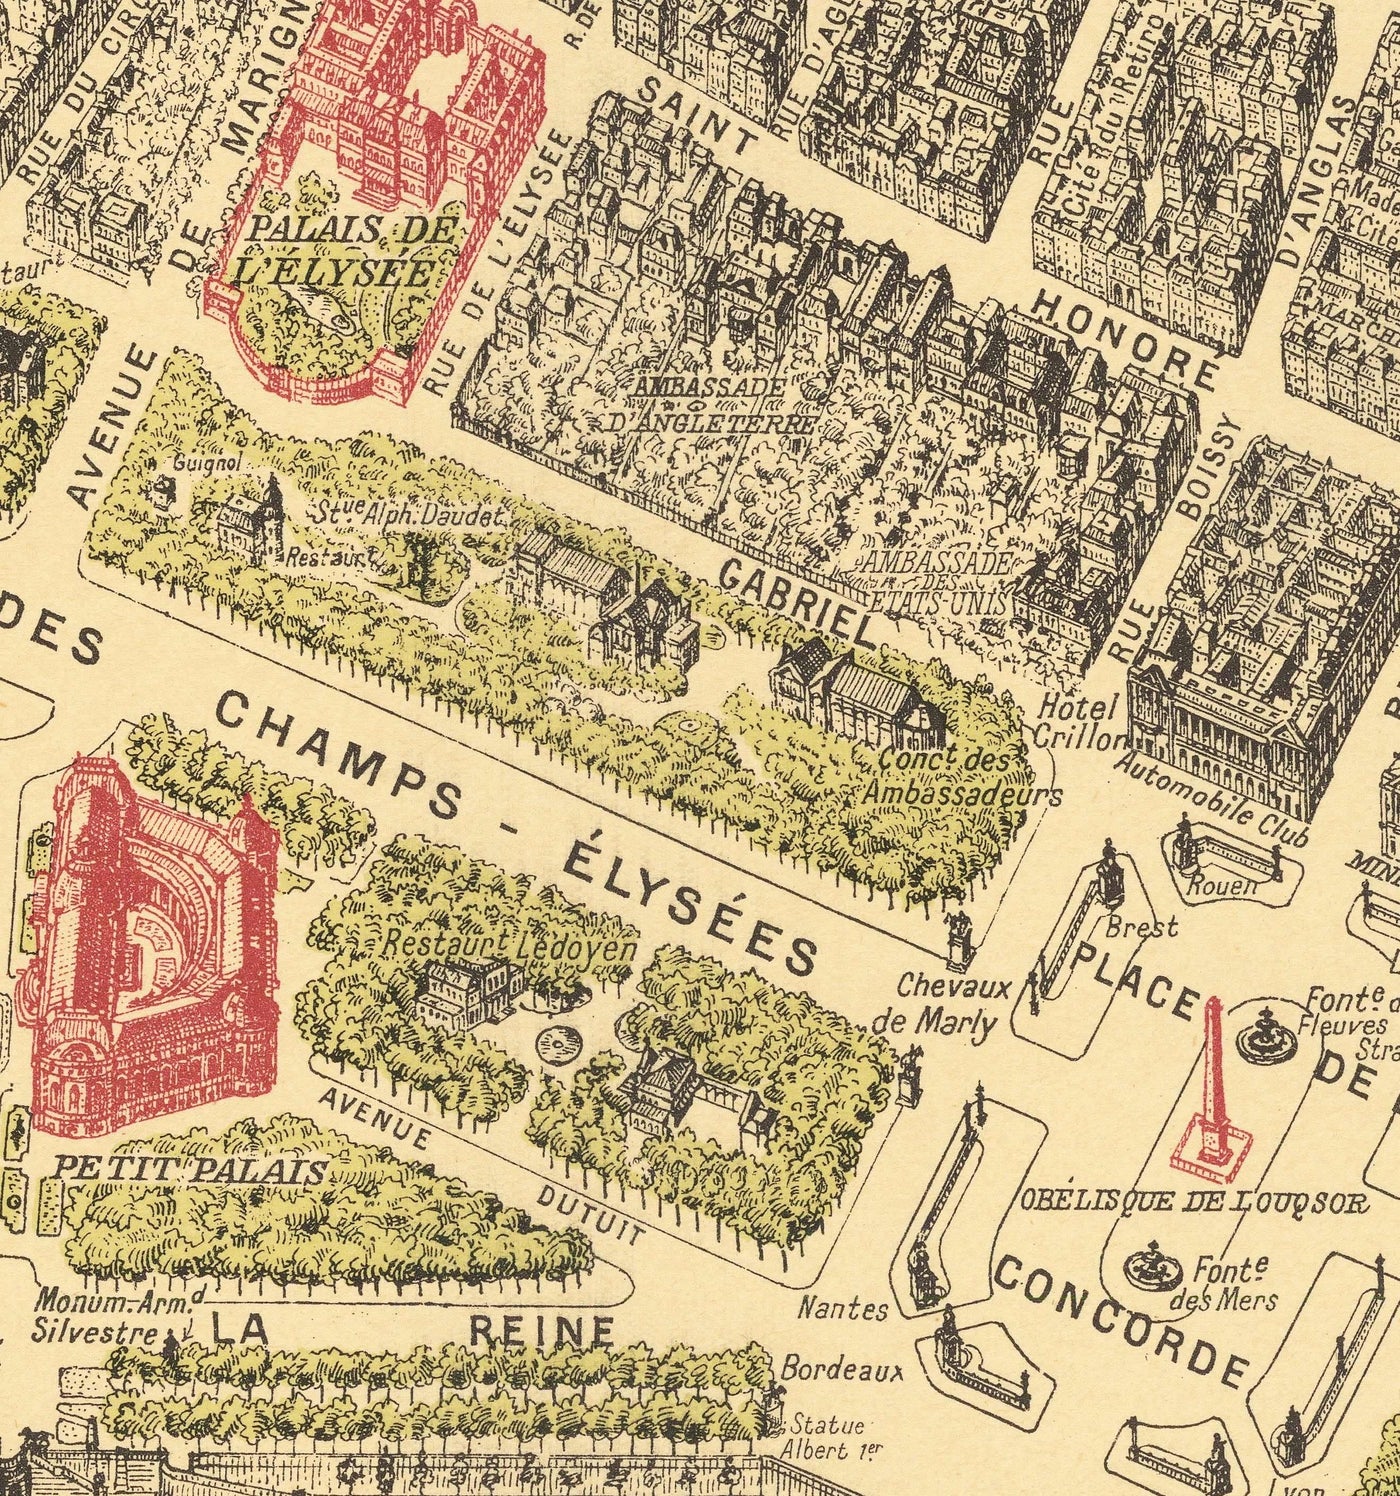 Rare Old Map of Paris, France by Georges Peltier, 1950 - Louvre, Notre Dame, Sainte-Chapelle, Eiffel Tower